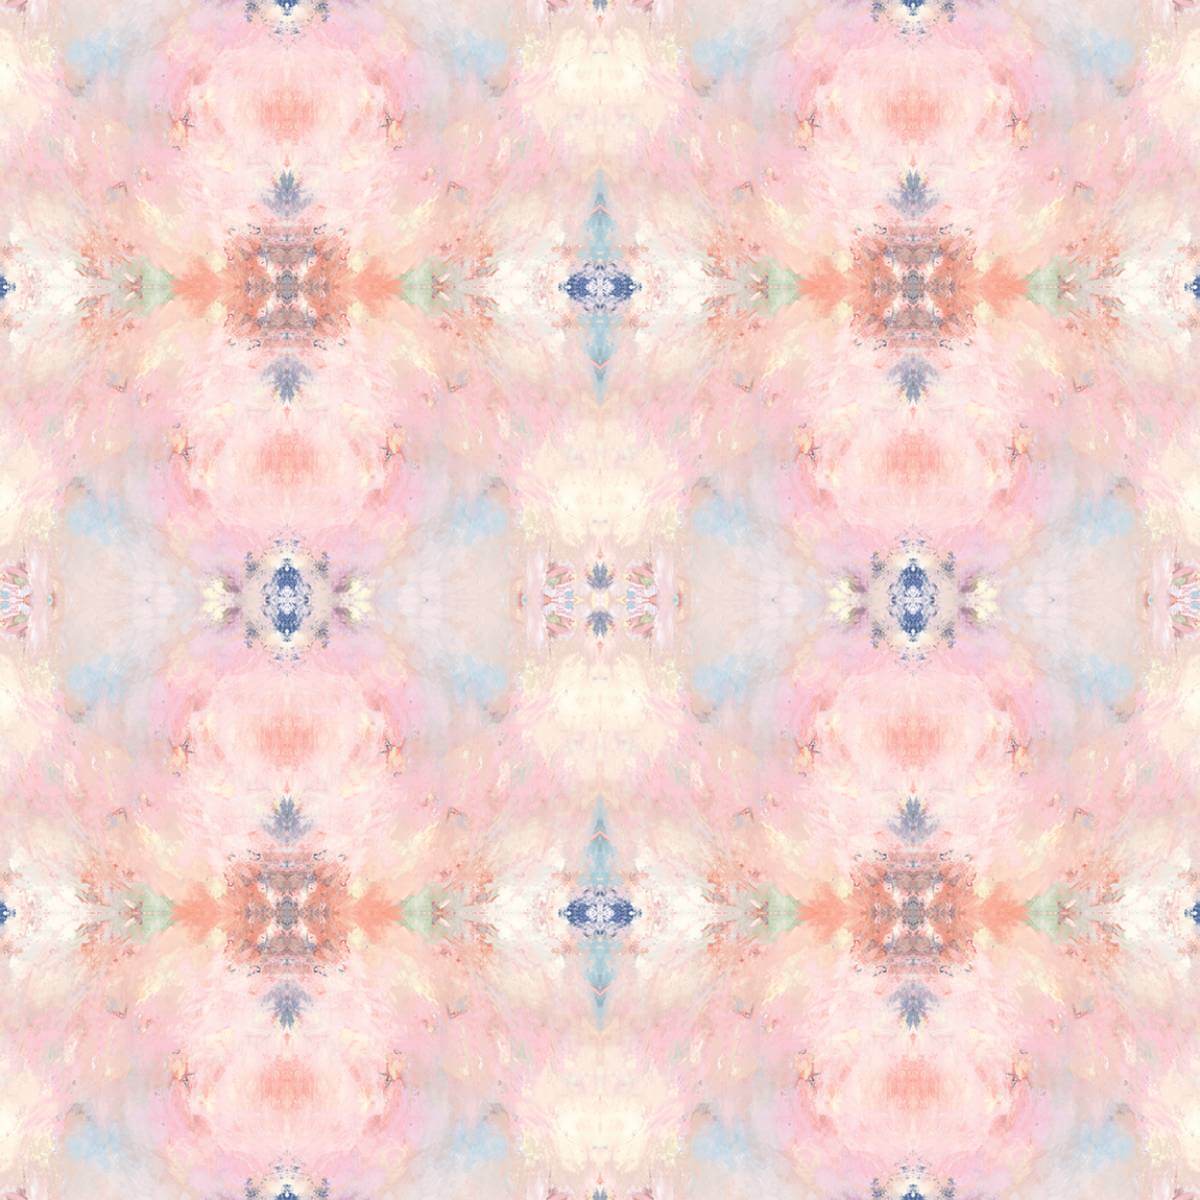 Daisy Bennett West Boulevard Collection Kaleidoscope Wallpaper - Pink